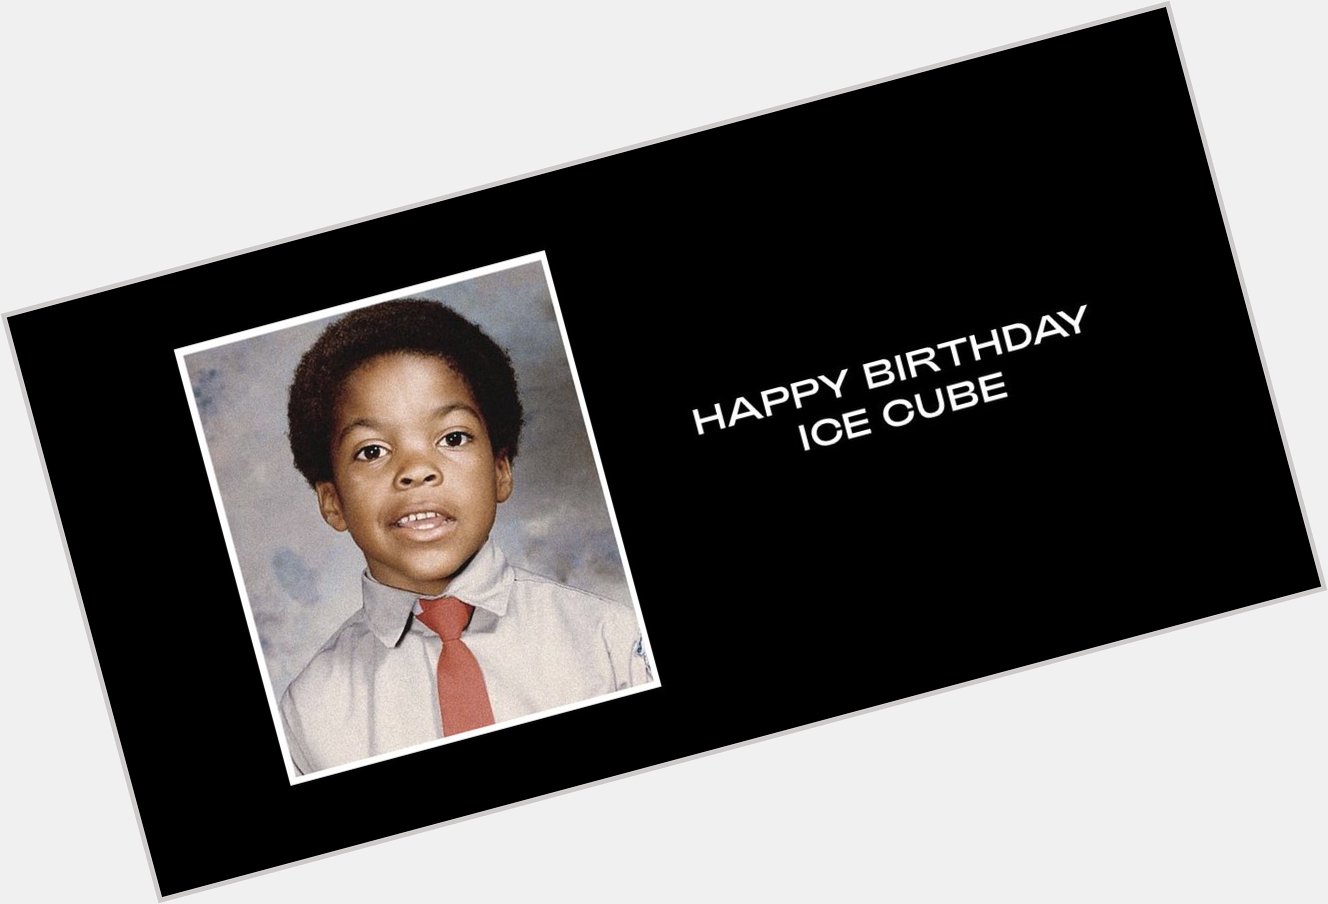  Happy Birthday Ice Cube & La La Anthony  